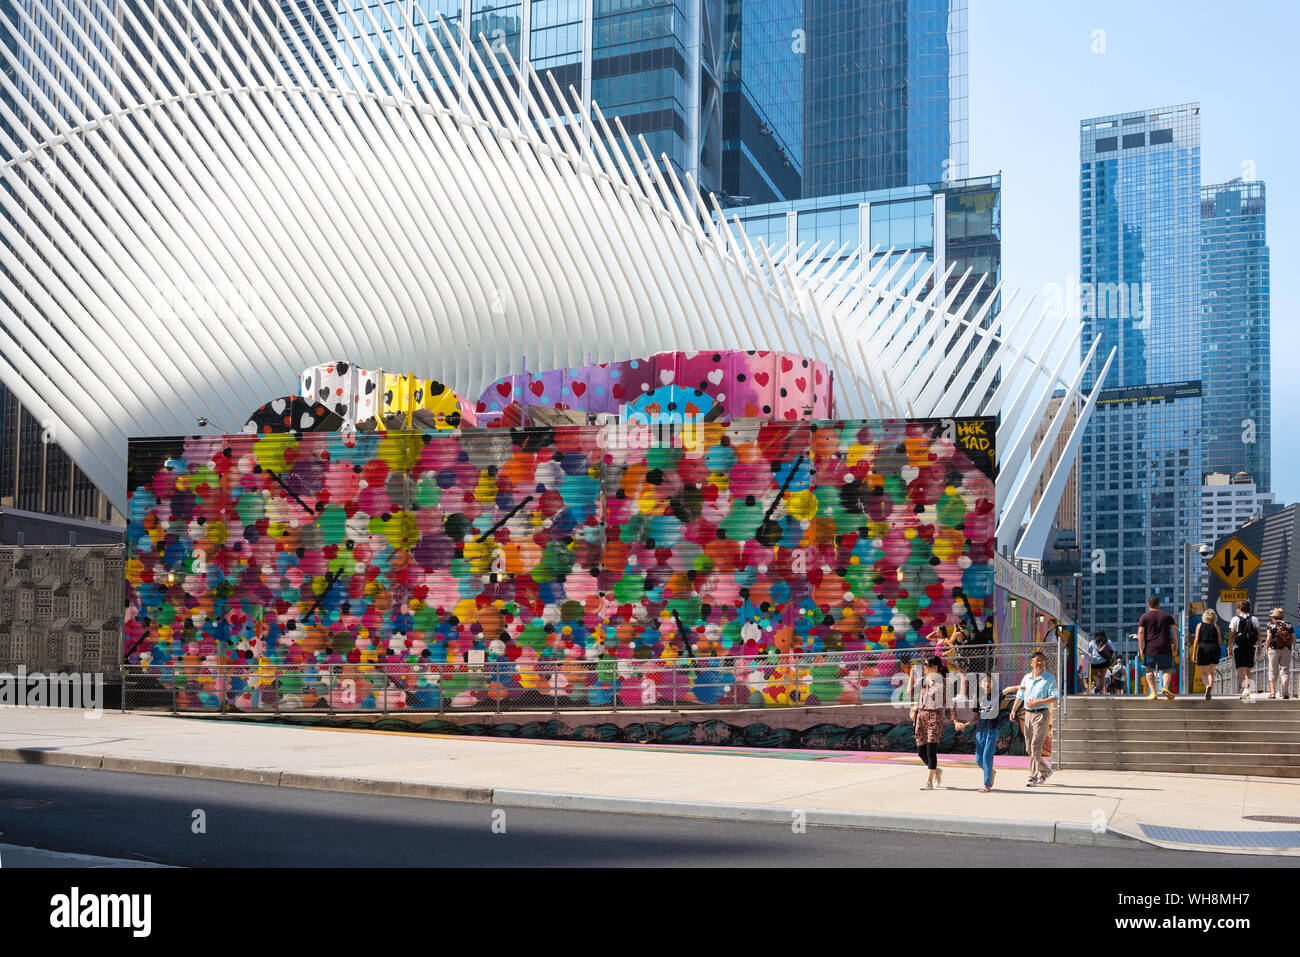 La couleur de la ville de New York, vue d'un mur coloré dans Fulton Street aux côtés de l'architecte Santiago Calatrava conçu bâtiment Oculus dans Lower Manhattan, NYC, USA Banque D'Images